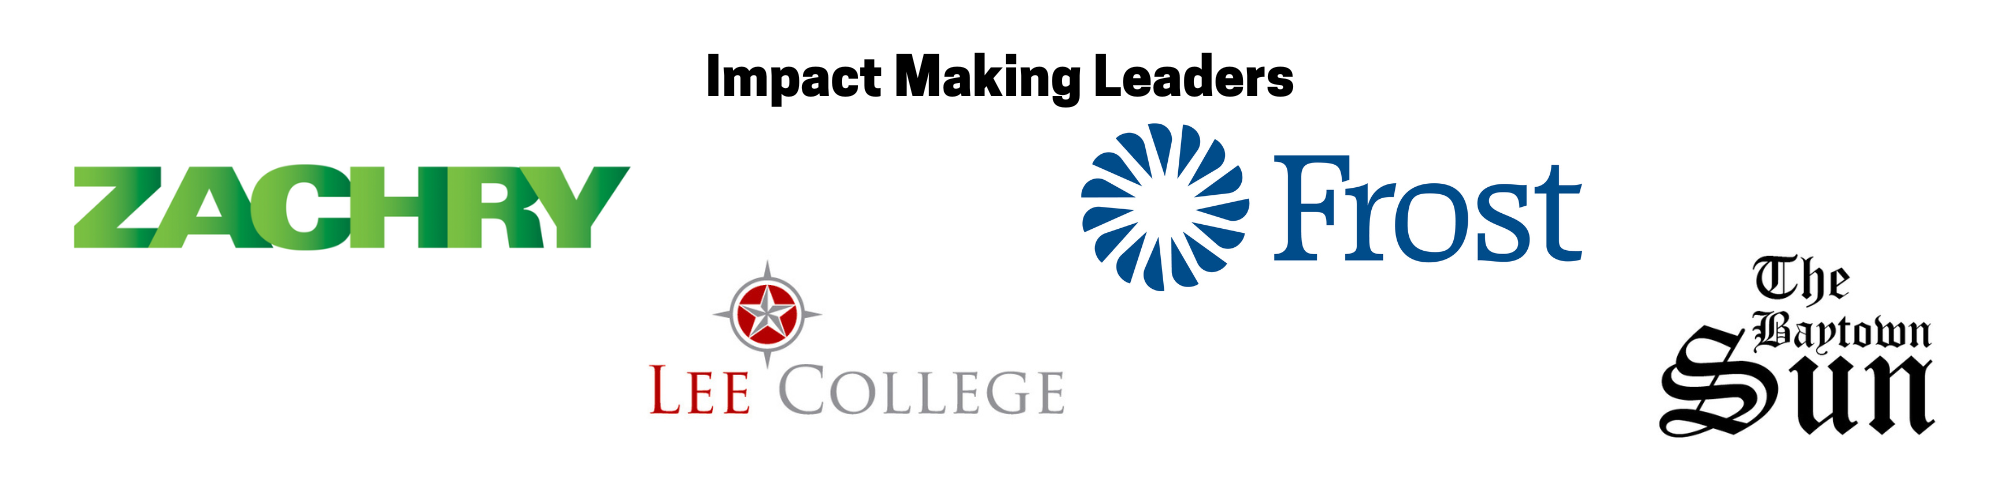 Impact Making Leaders